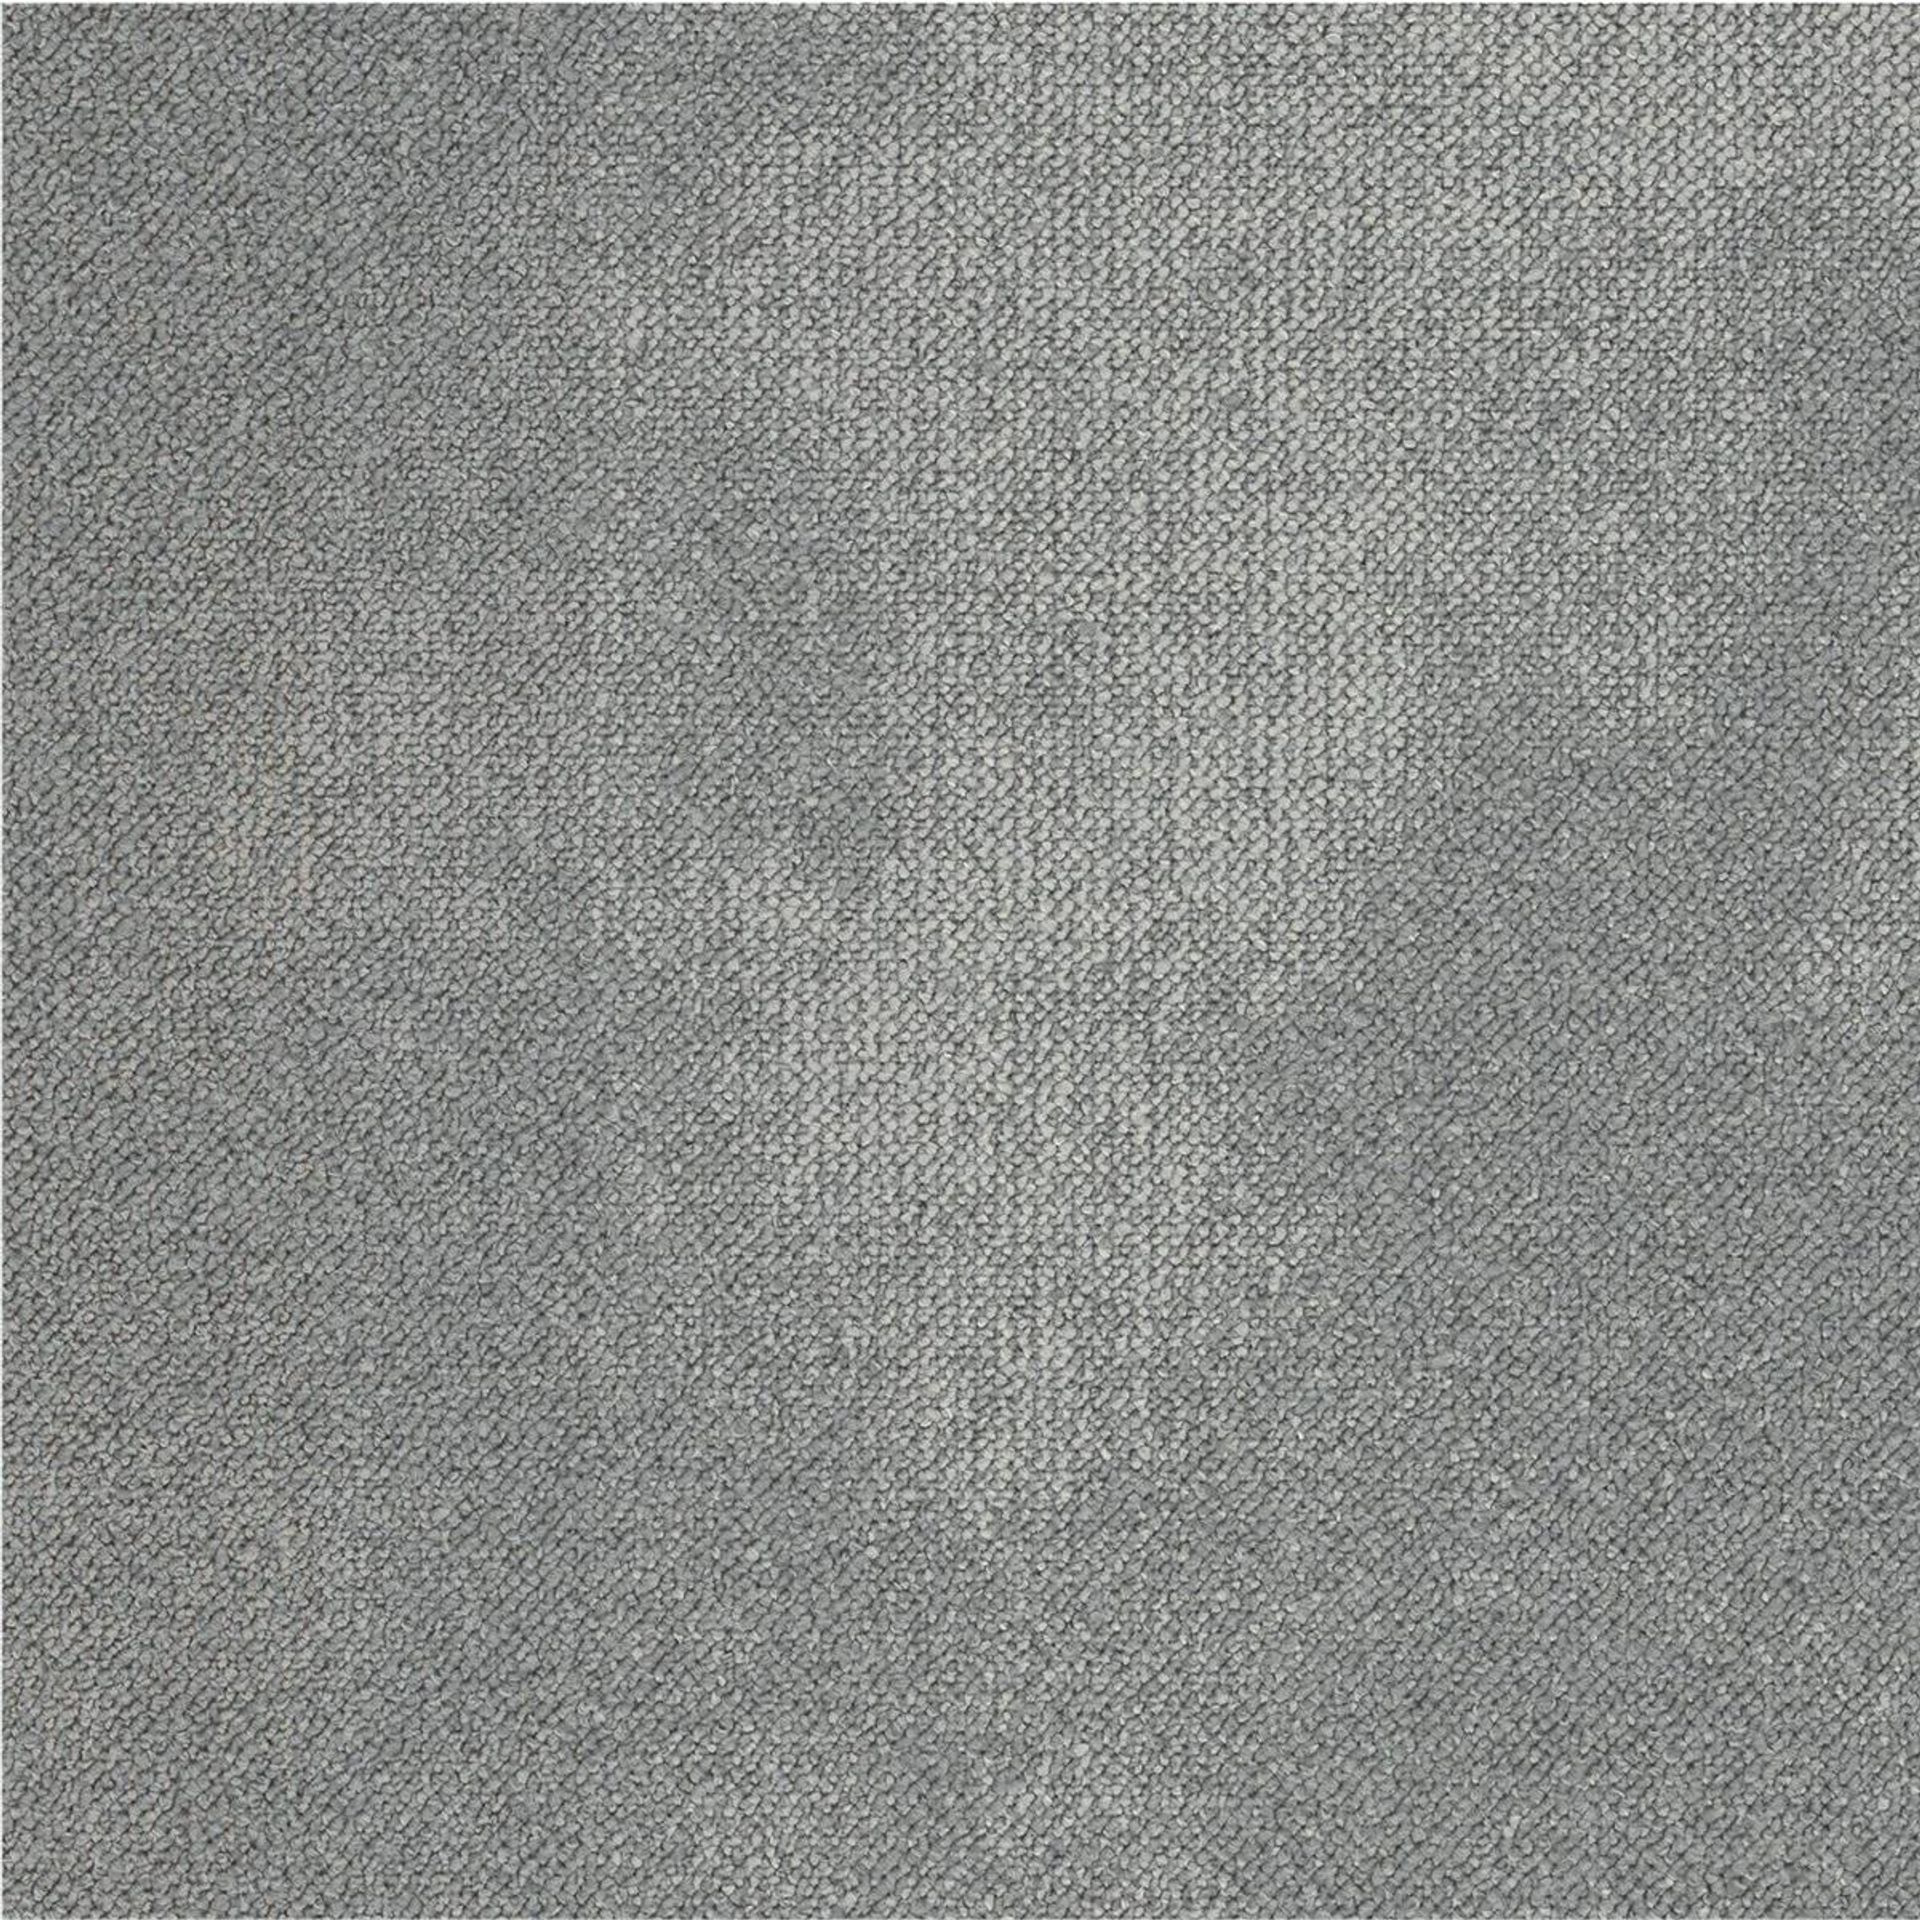 Teppichfliesen 50 x 50 cm Schlinge strukturiert Serene AB93 9935-V B8 Grau Organisch